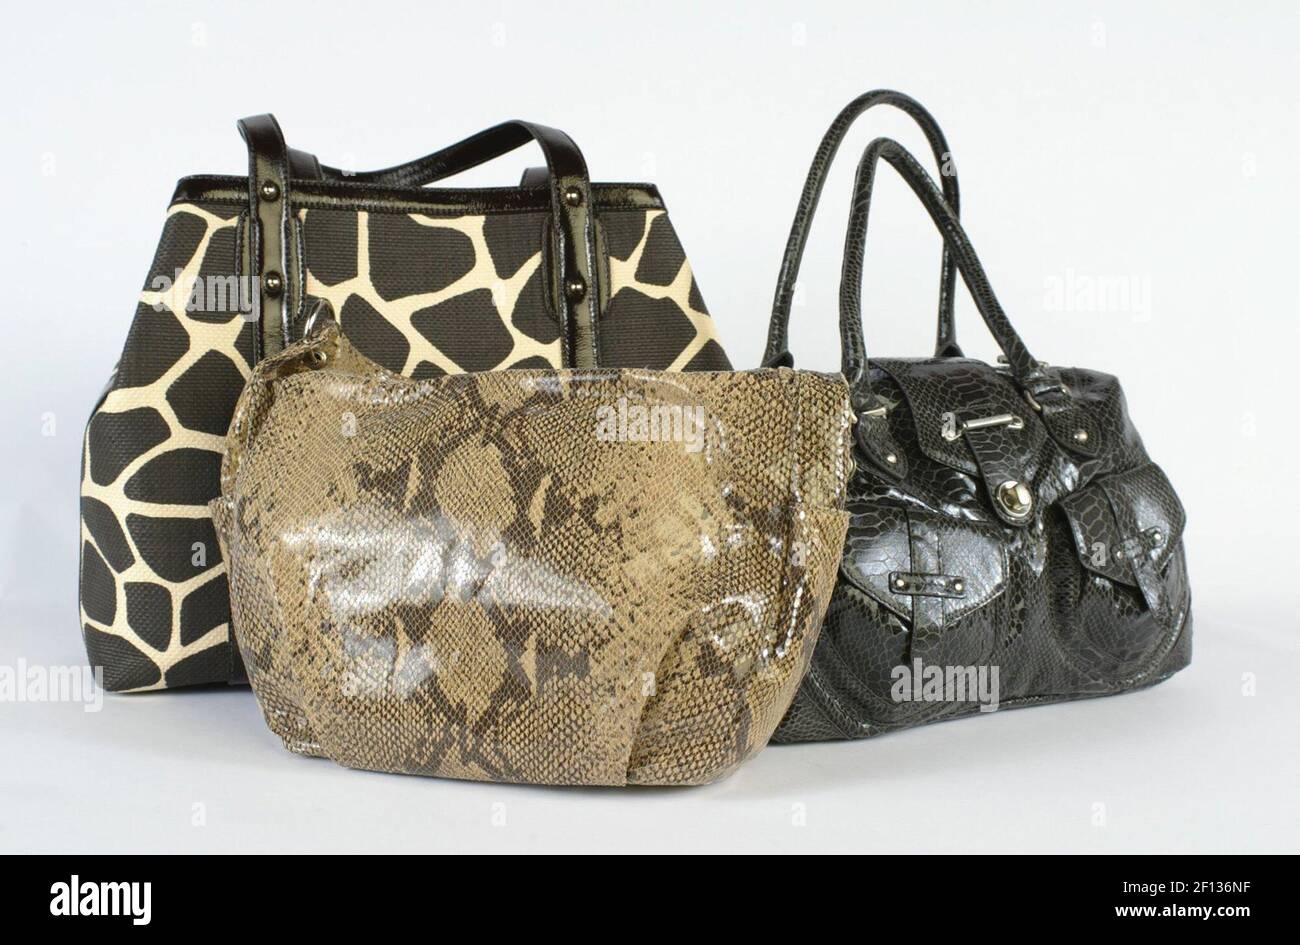 Von links nach rechts: Giraffe-Print-Tasche - ($198) bei Banana Republic,  Snake-Print-Handtasche - ($110) bei Talbots und Botkier graue Croc-Print- Handtasche - ($39,99) bei Target. (Foto von Brittanie Williams/St. Louis  Post-Dispatch/MCT/Sipa USA ...